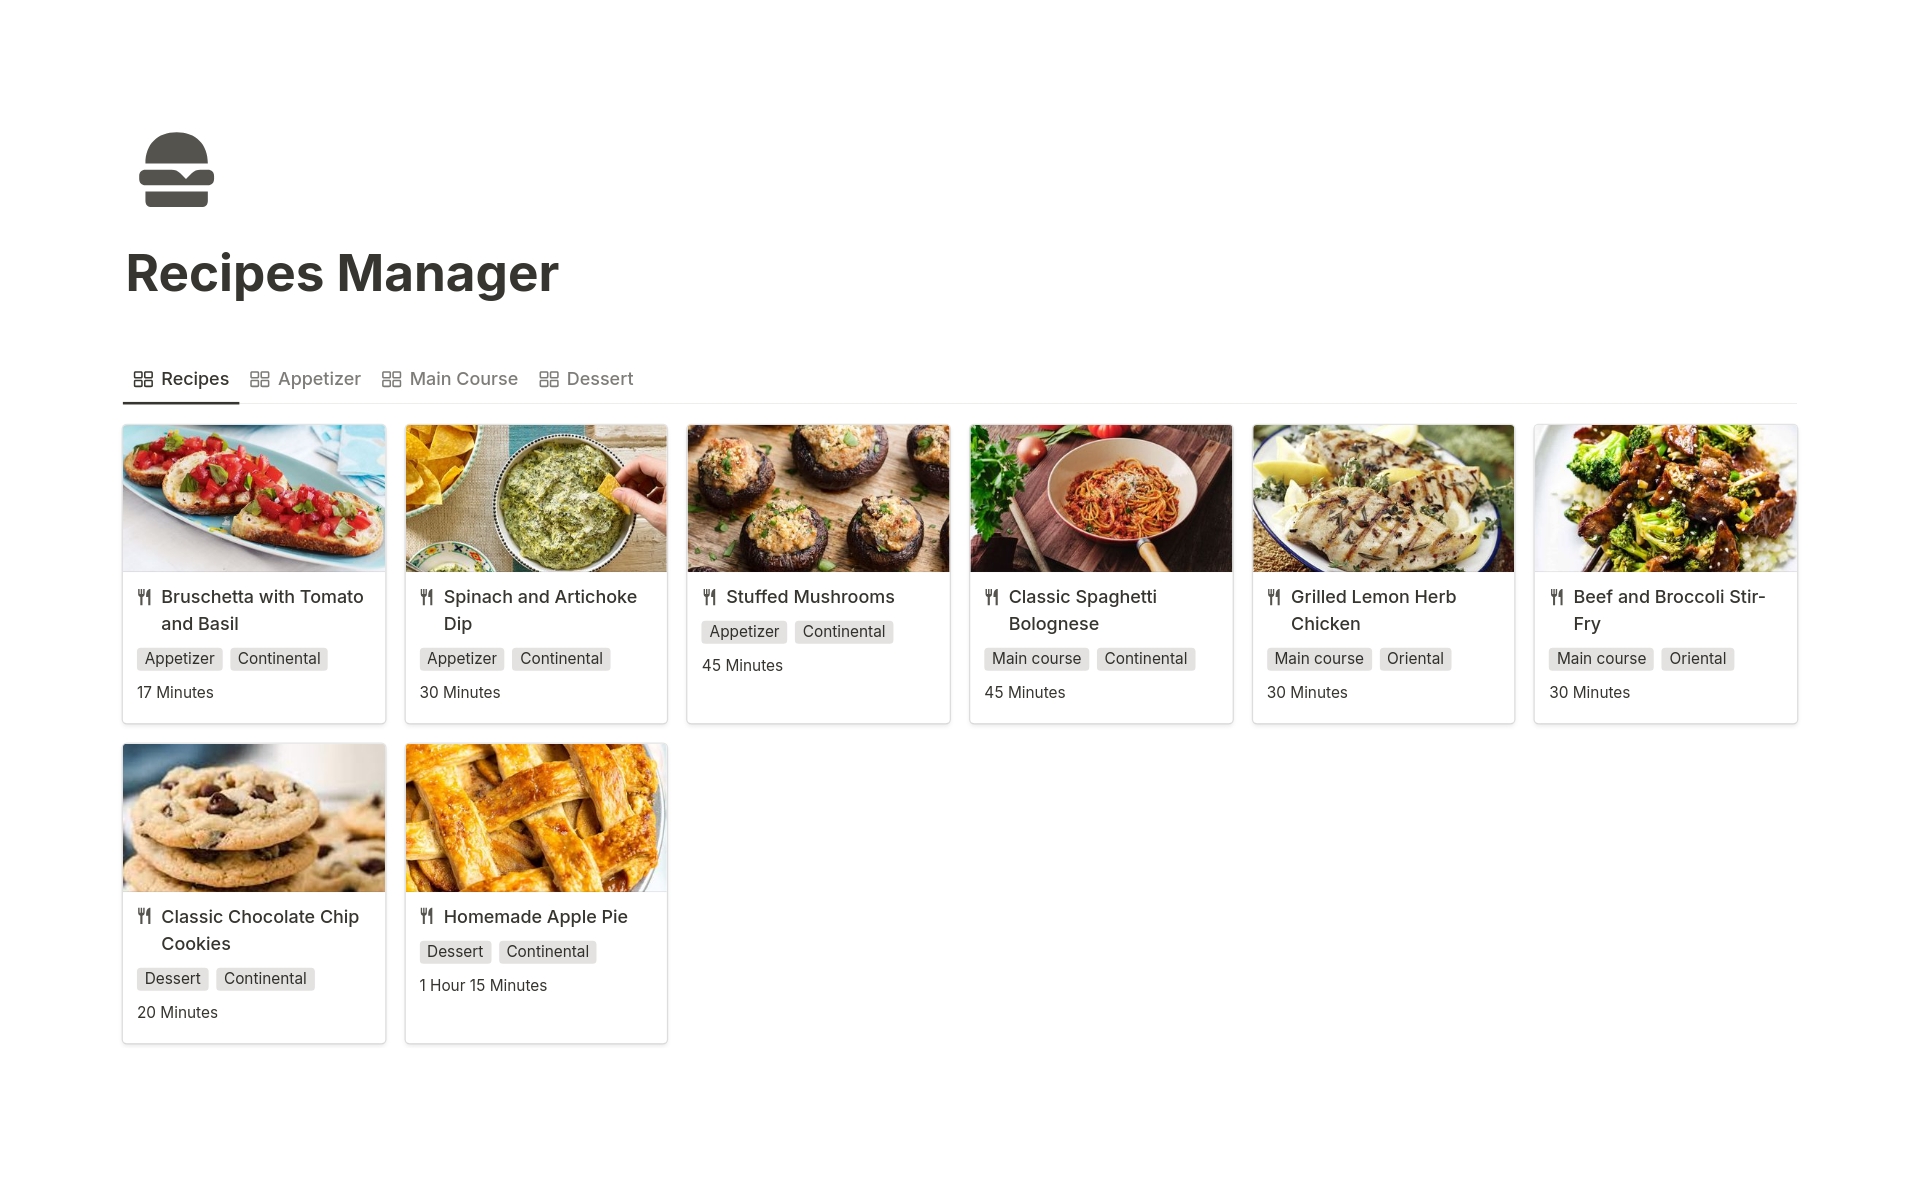 Vista previa de una plantilla para Recipes Manager